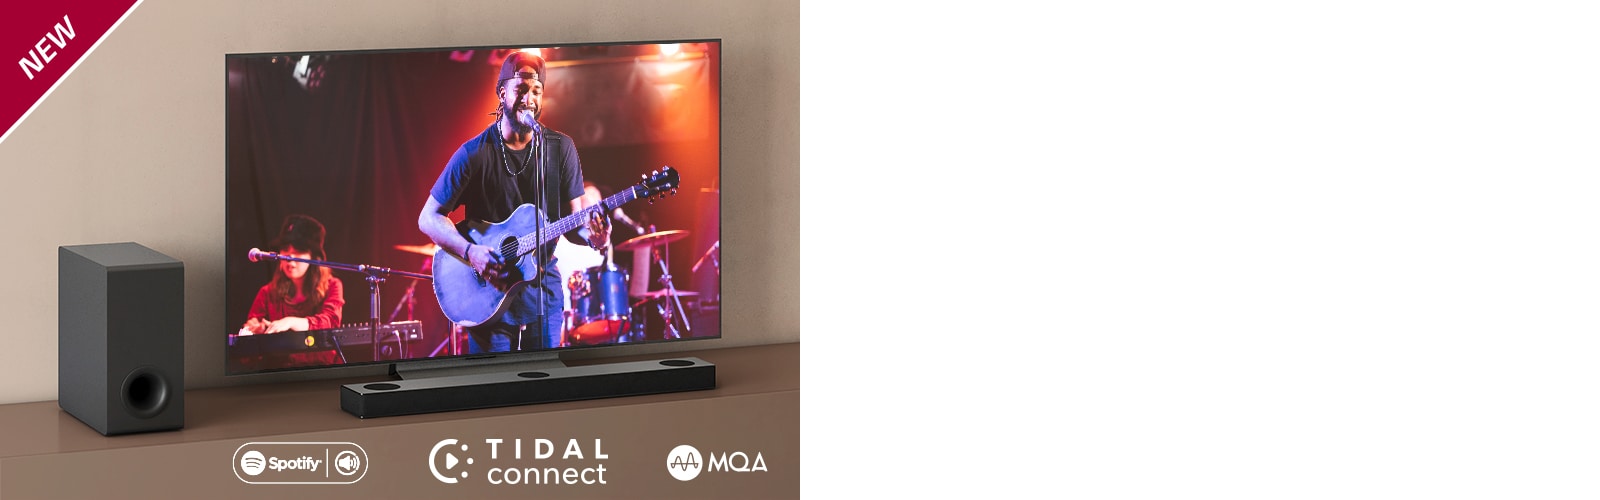 El LG TV está colocado en la estantería marrón y la barra de sonido LG S80QY delante del televisor. El subwoofer está instalado en el lado izquierdo del TV. El TV muestra la escena de un concierto. La marca NEW se visualiza en la esquina superior izquierda.